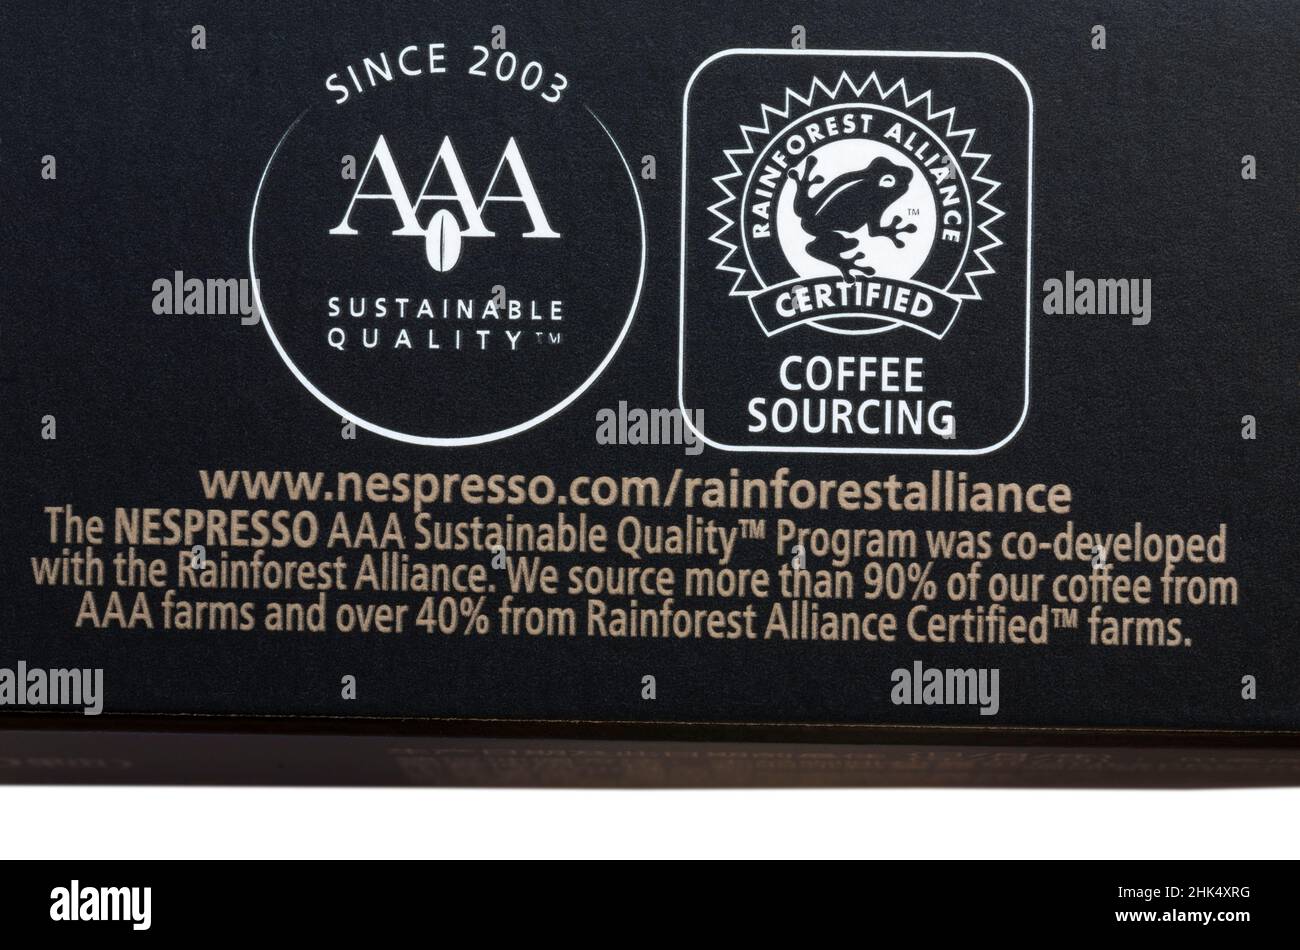 Source de café certifiée Rainforest Alliance et symboles de qualité durable AAA sur boîte de capsules de café Nespresso Banque D'Images